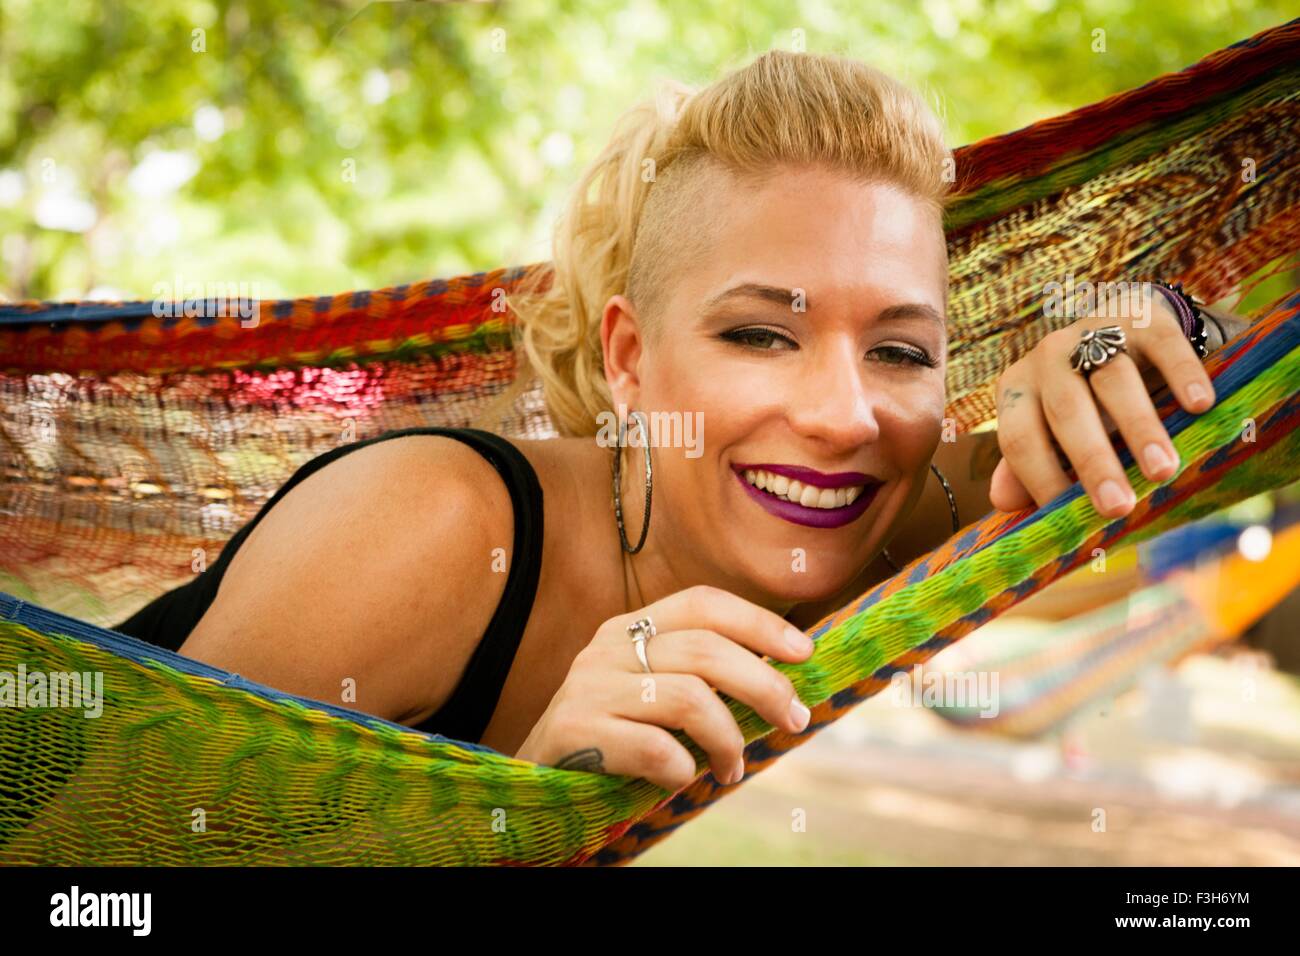 Portrait of mid adult woman with shaved cheveux blonds couché dans un hamac de jardin Banque D'Images